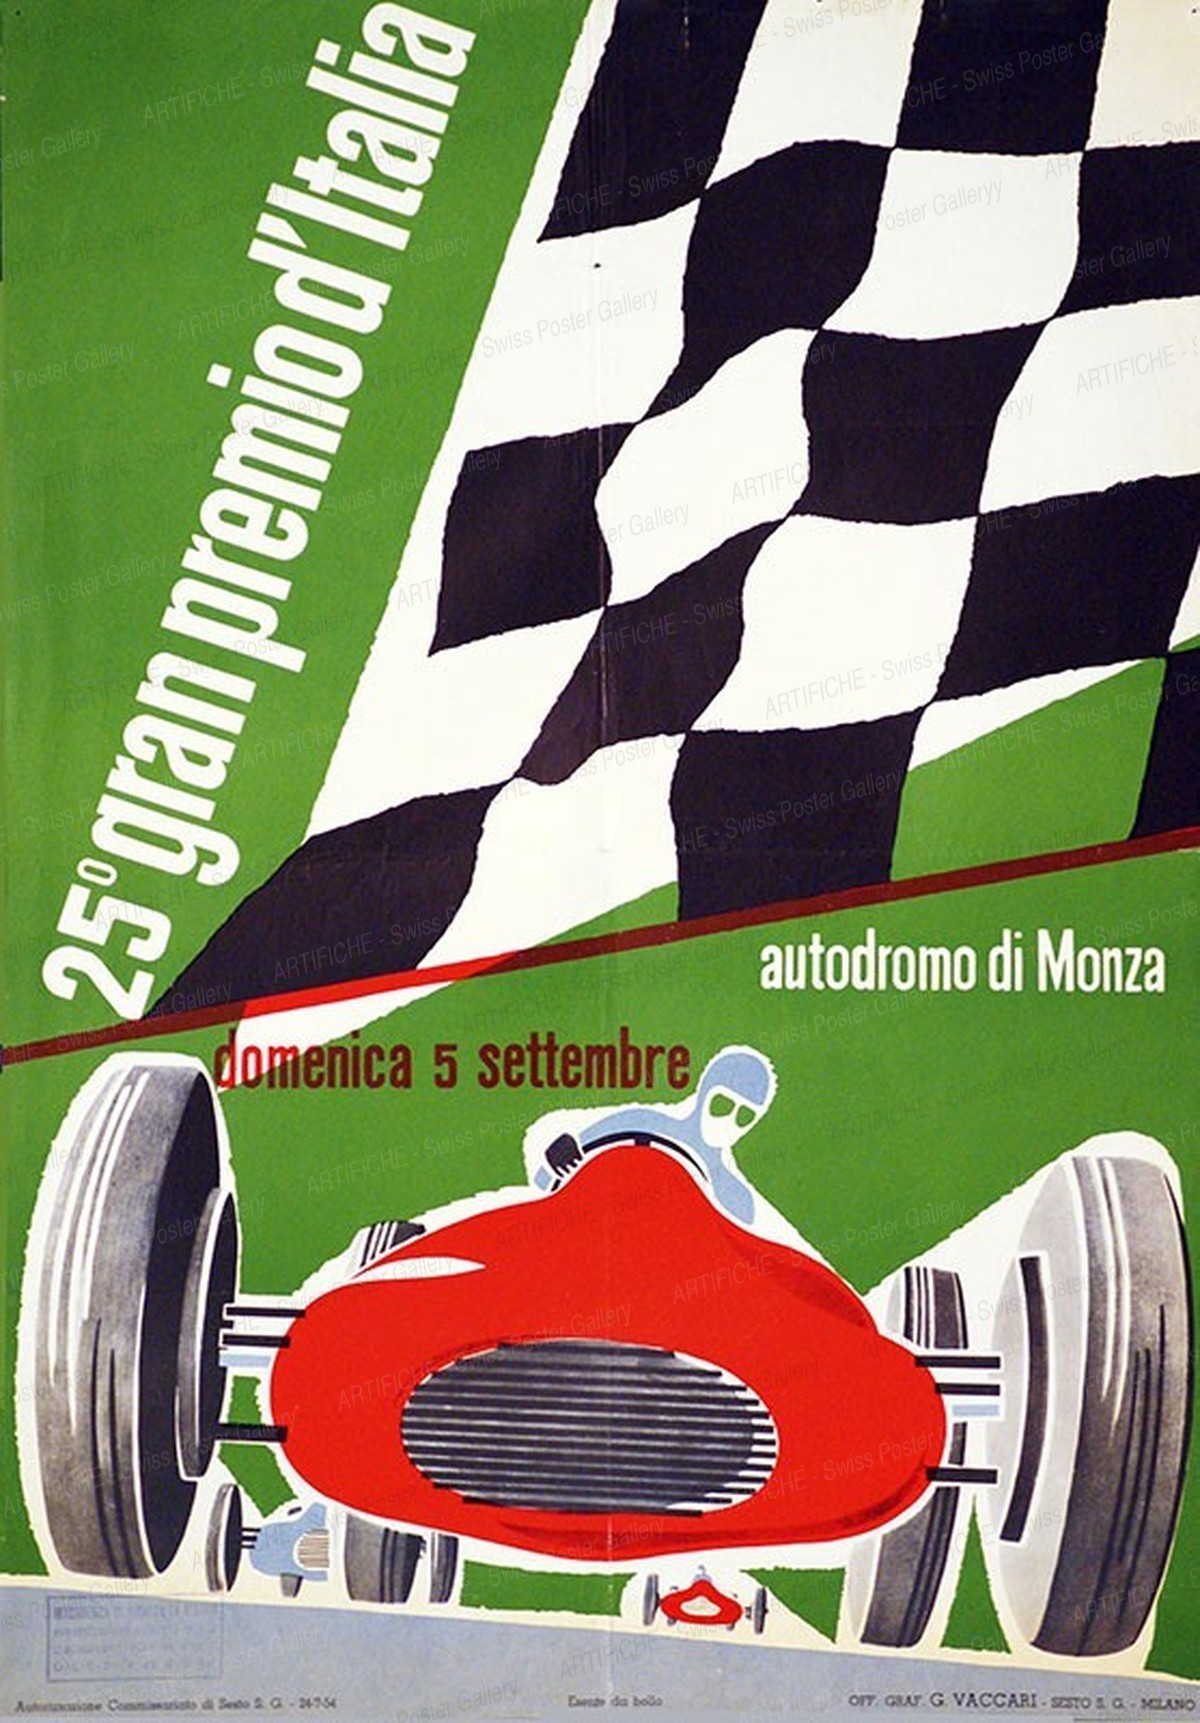 25.o Gran premio d’Italia – Autodromo di Monza, Max Huber